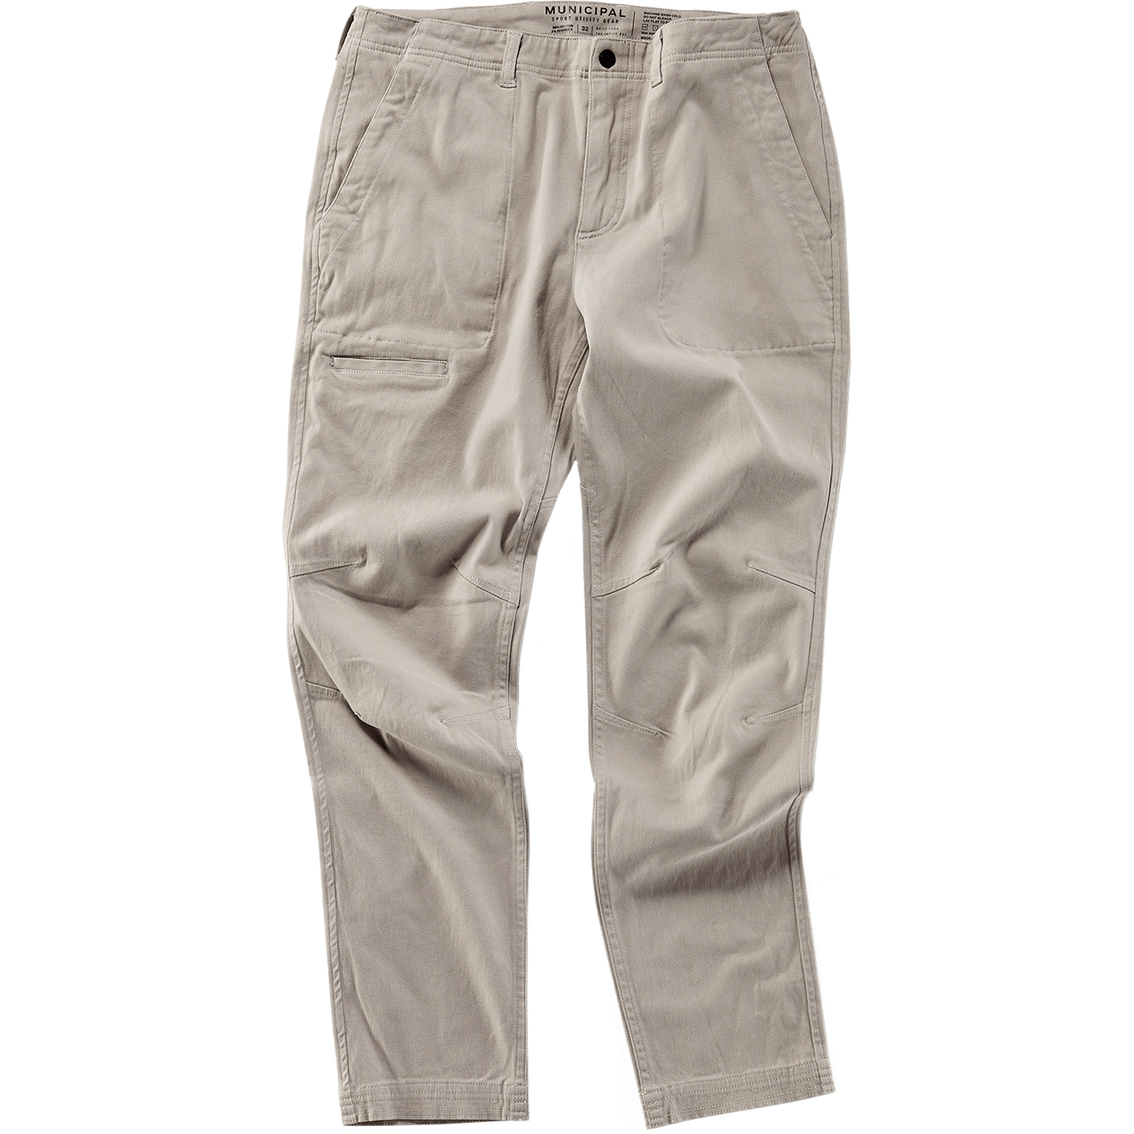 Municipal Multi Pants | Pants | Clothing & Accessories | Shop The Exchange